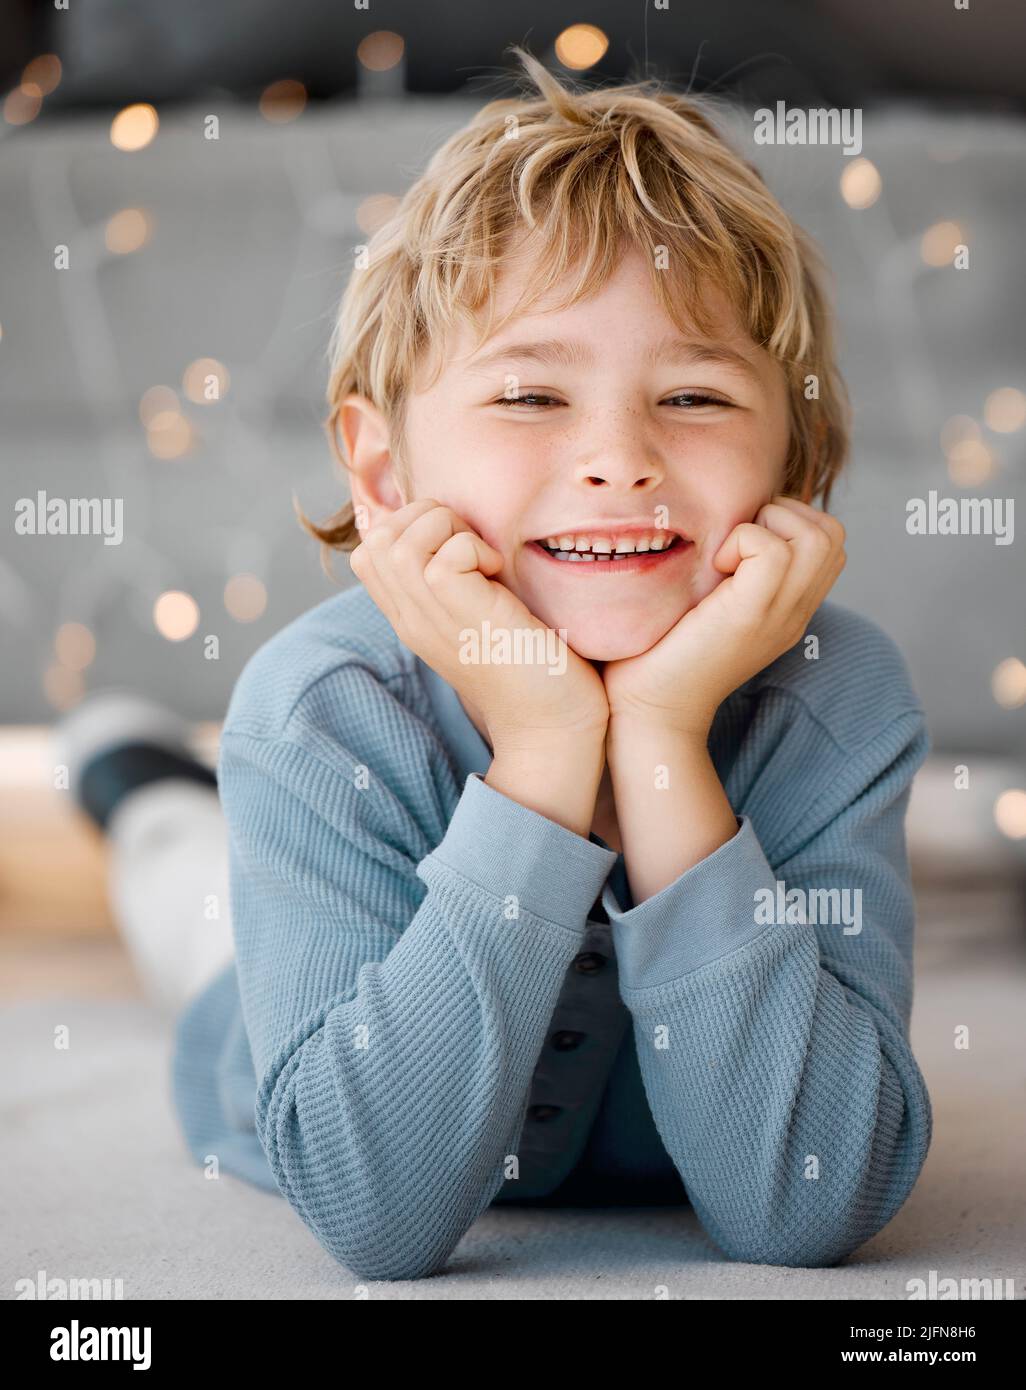 Portrait d'un petit garçon blanc souriant allongé sur le sol avec sa tête reposant dans les mains à la maison. Le visage d'un adorable gamin joyeux Banque D'Images